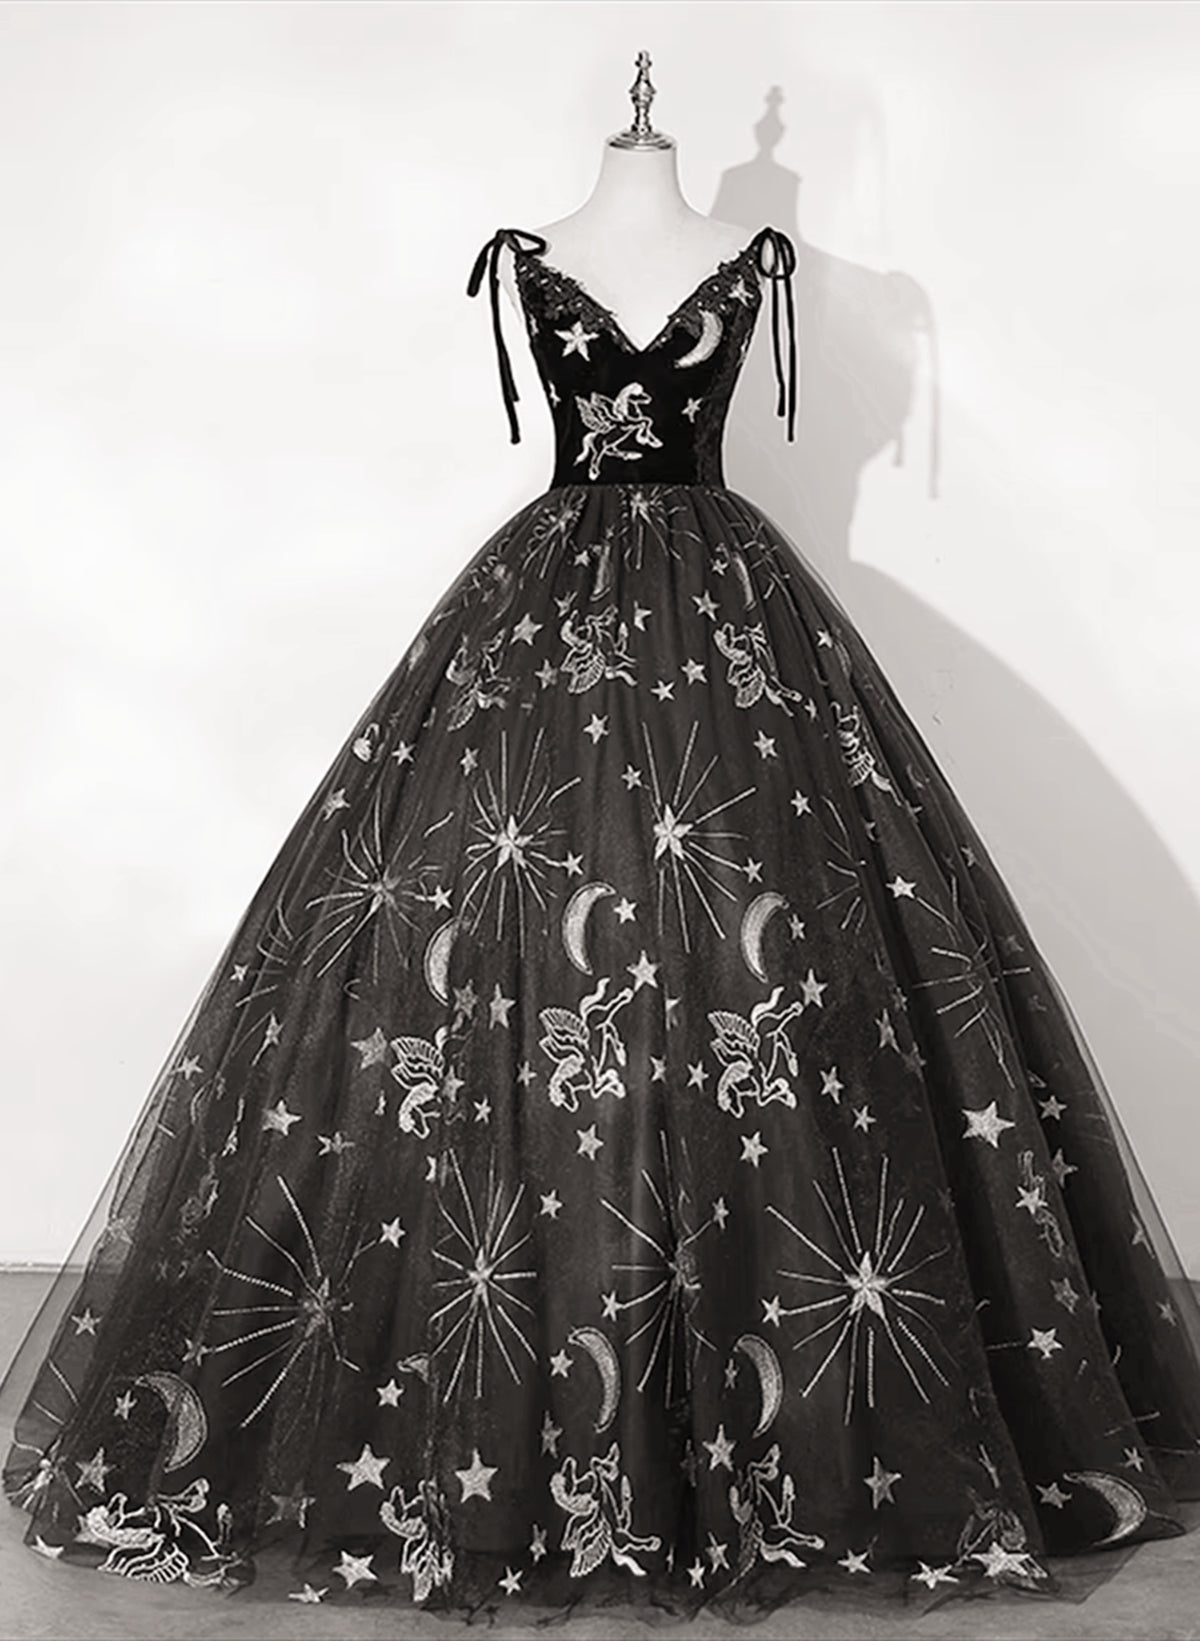 Black Ball Gown Floral V-neckline Straps Sweet 16 Dress, Black Tulle Formal Dress